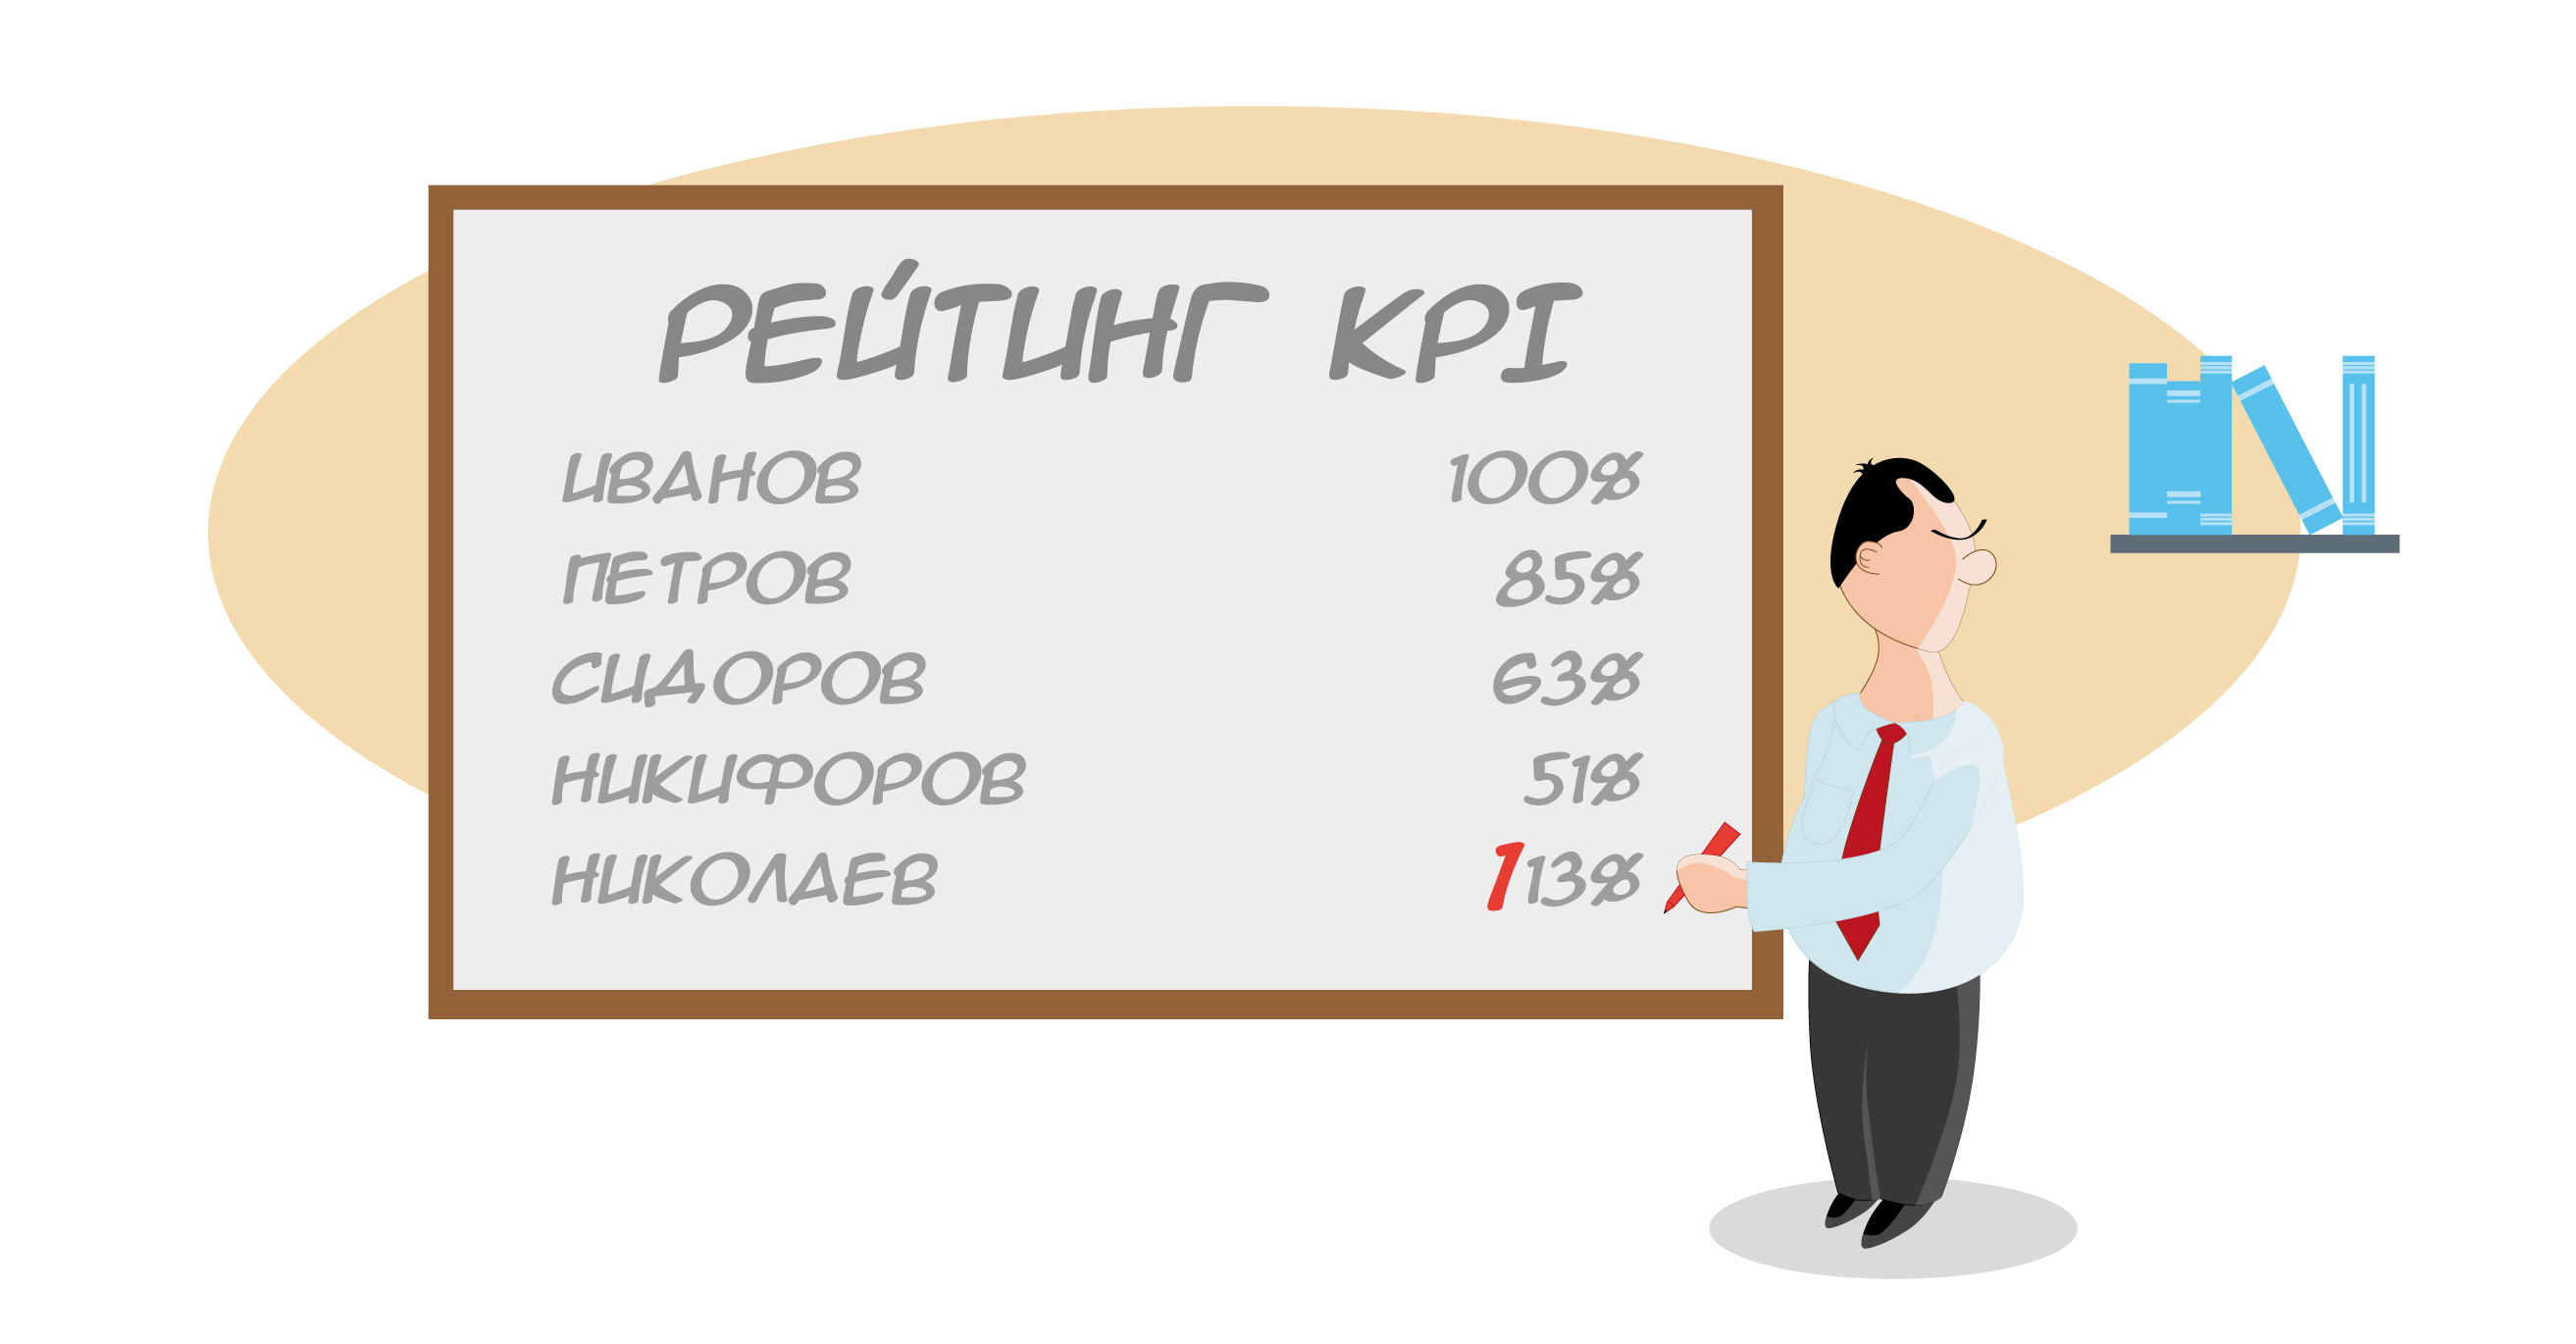 Рейтинг KPI